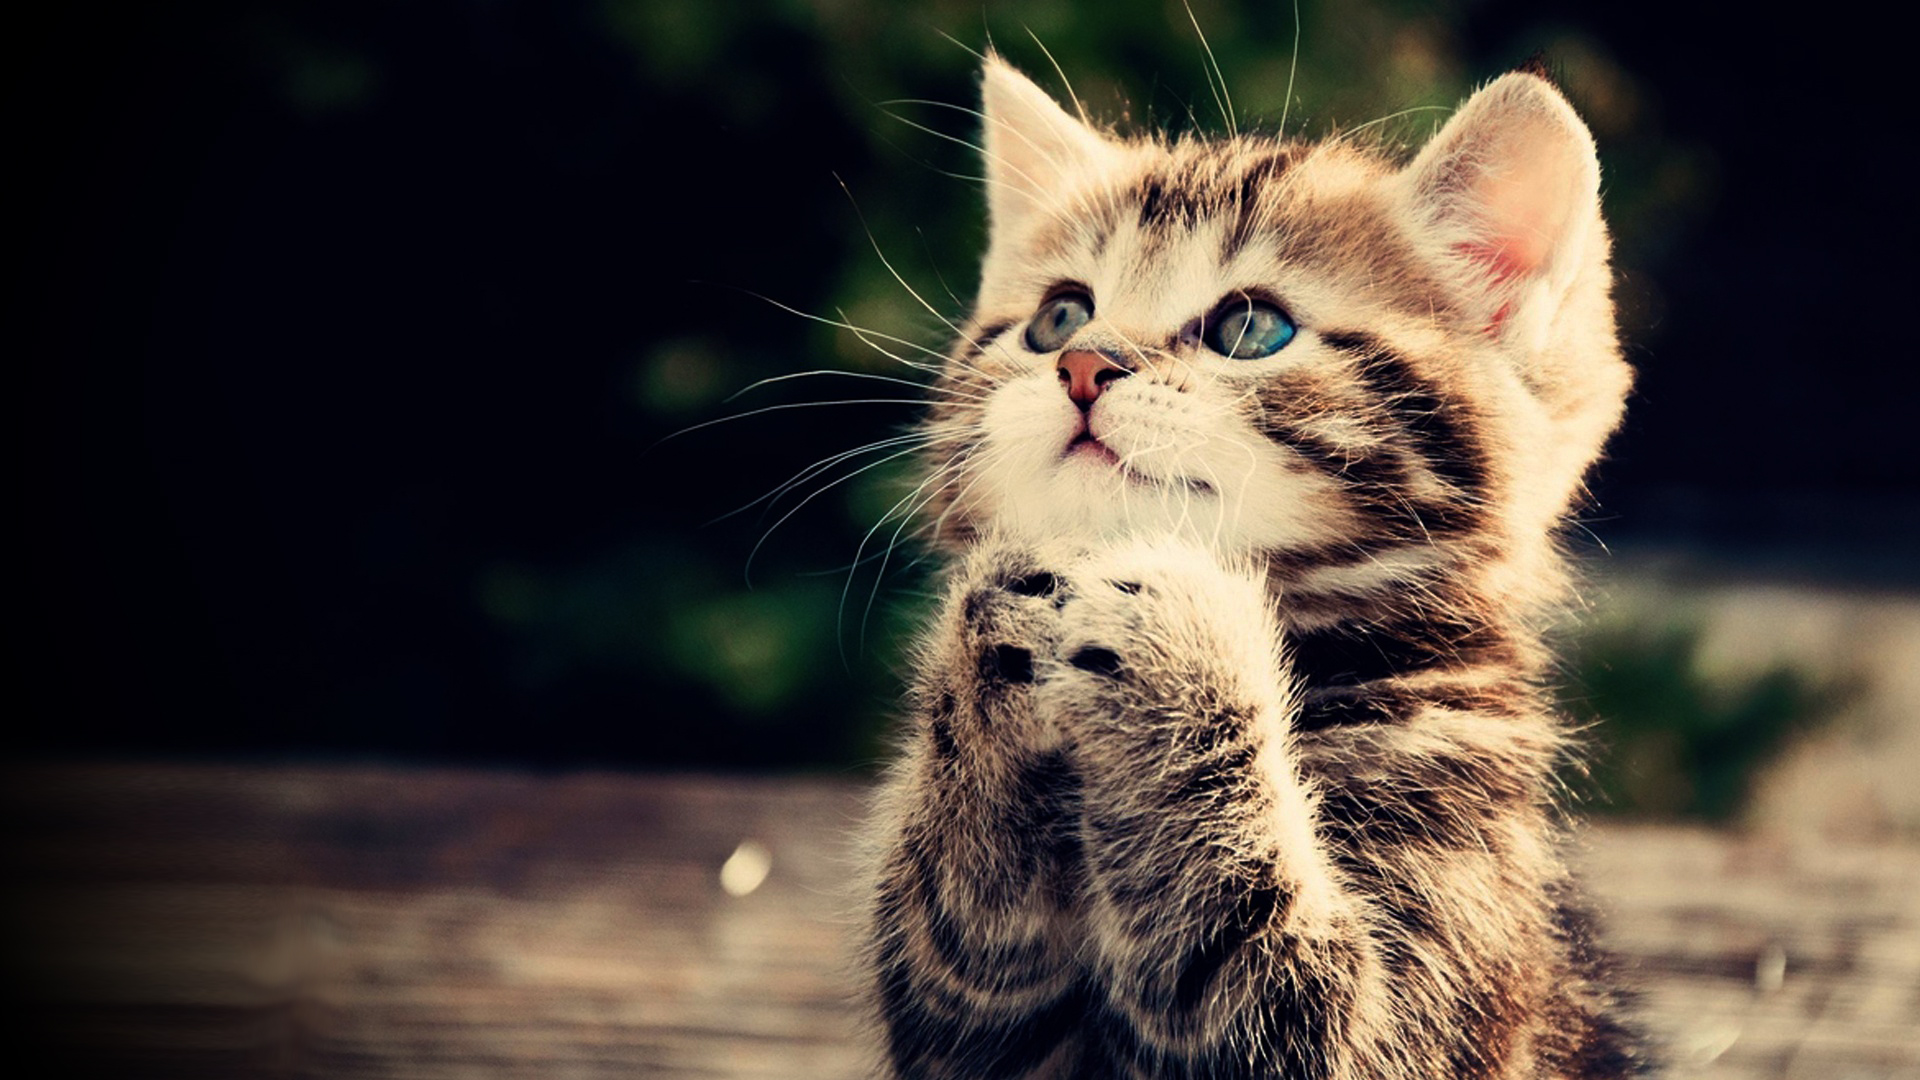 Praying Kitten Full HD Wallpaper Cute Animal Picture 1080p